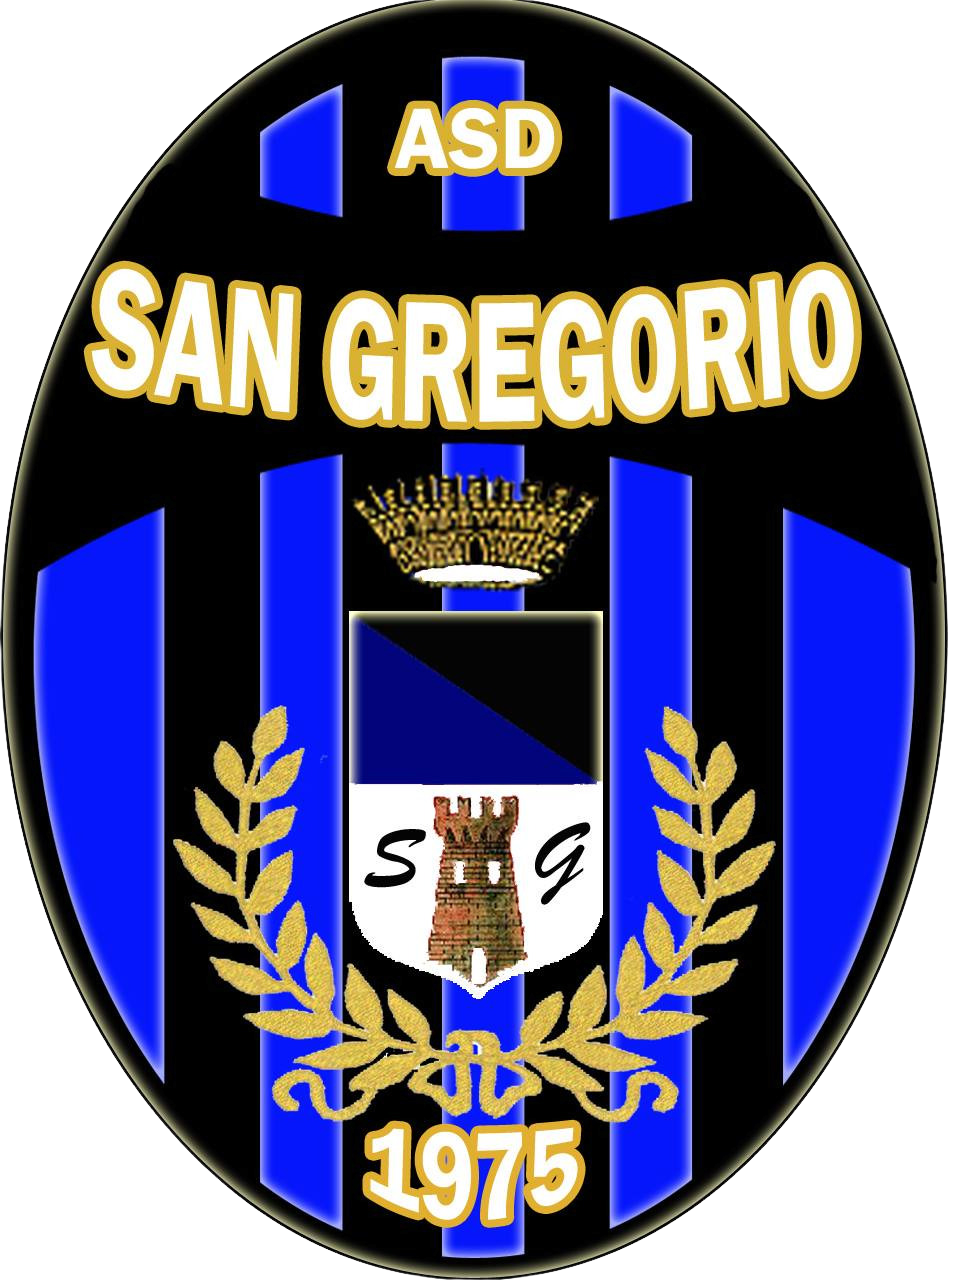 ASD San Gregorio Calcio